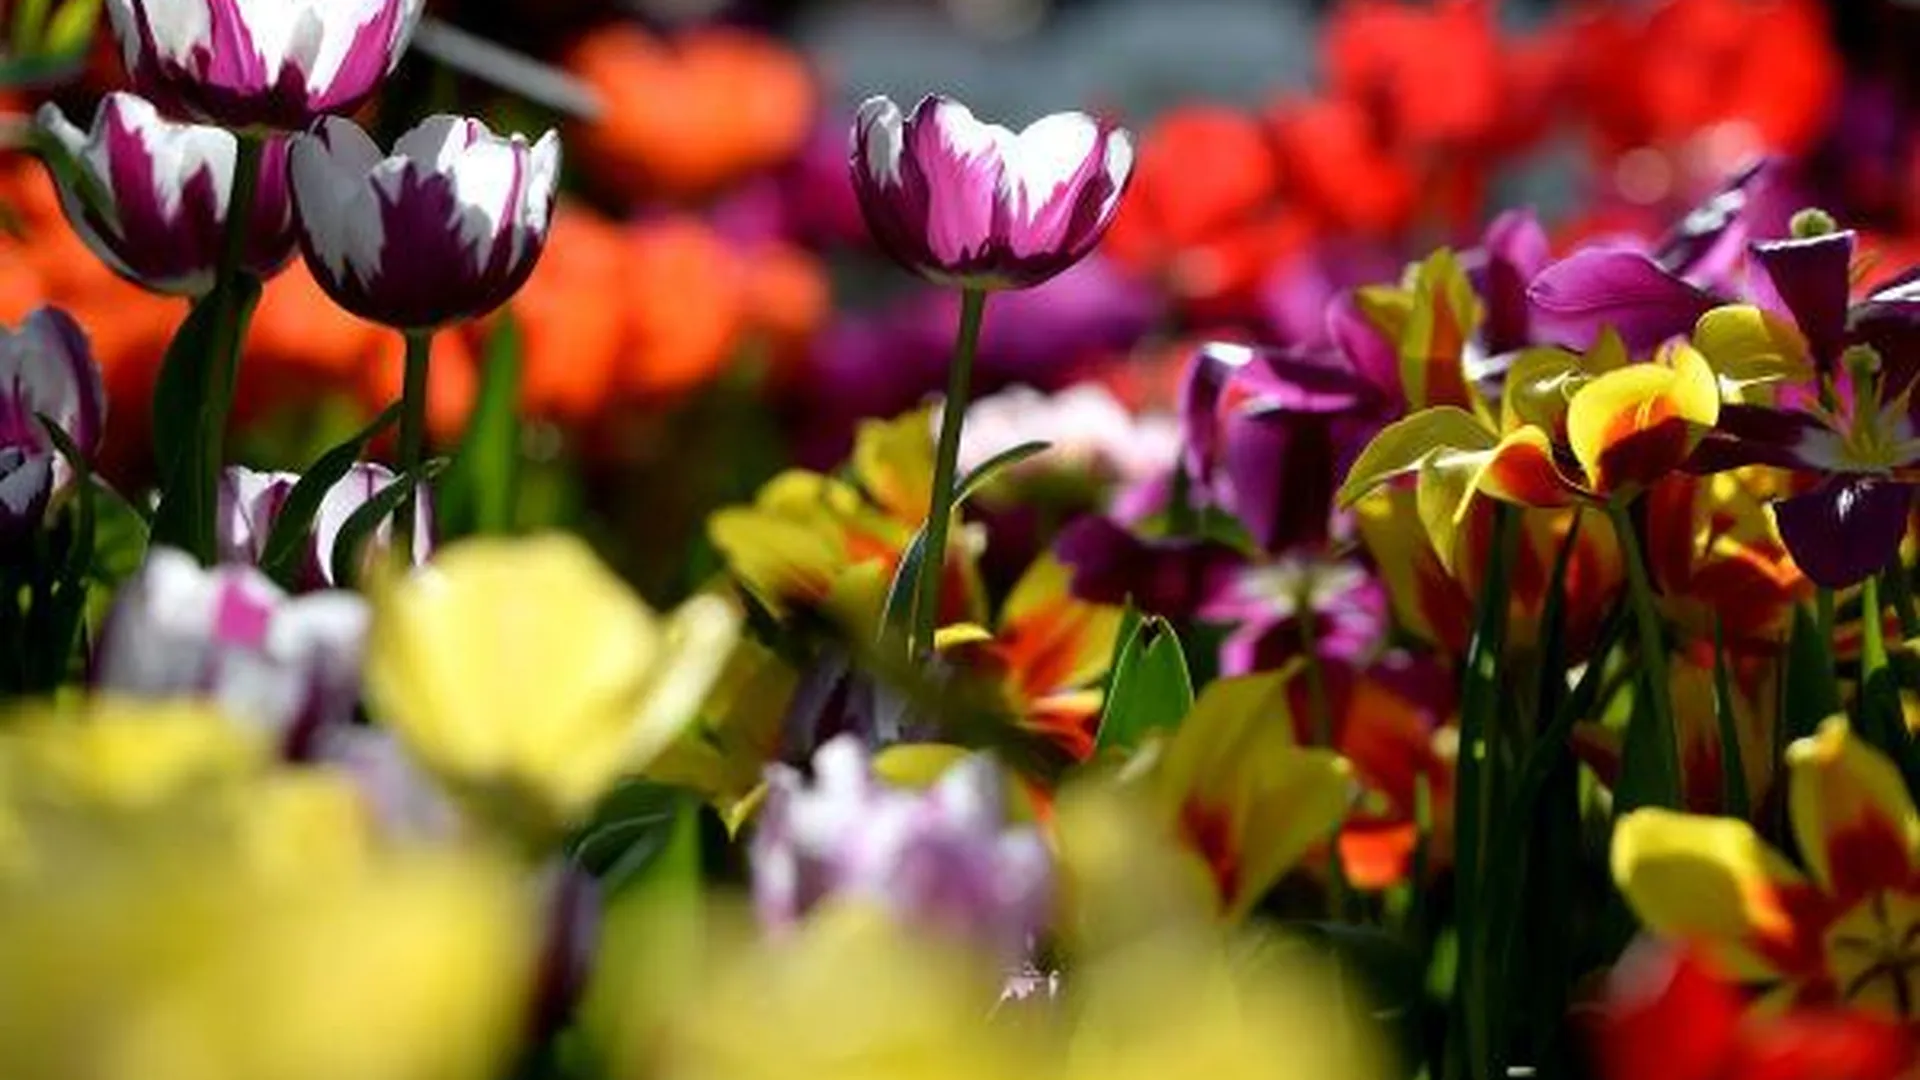 Порядка 3,4 млн тюльпанов в год будут выращивать в Ступинском районе